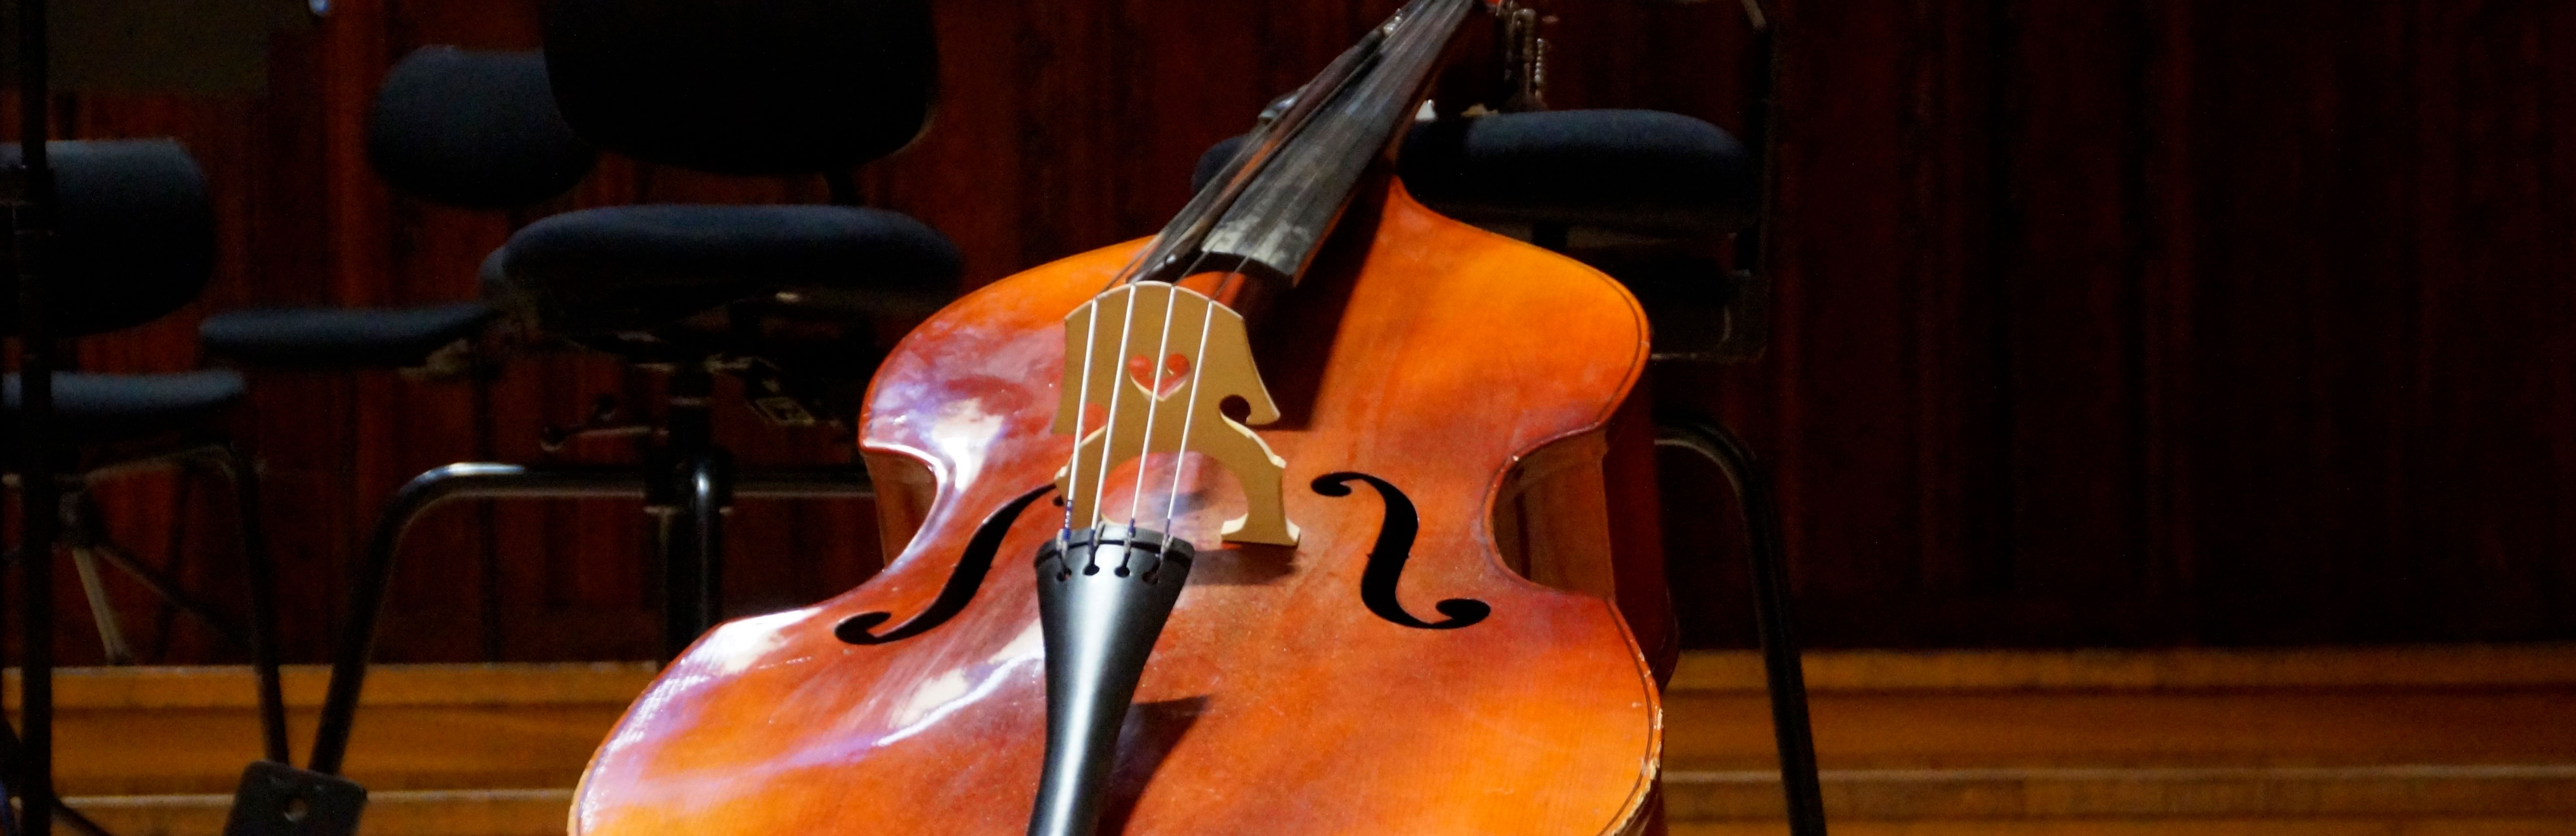 Ciclo DAMuseos: Ensamble de Cellos en el Museo Roca